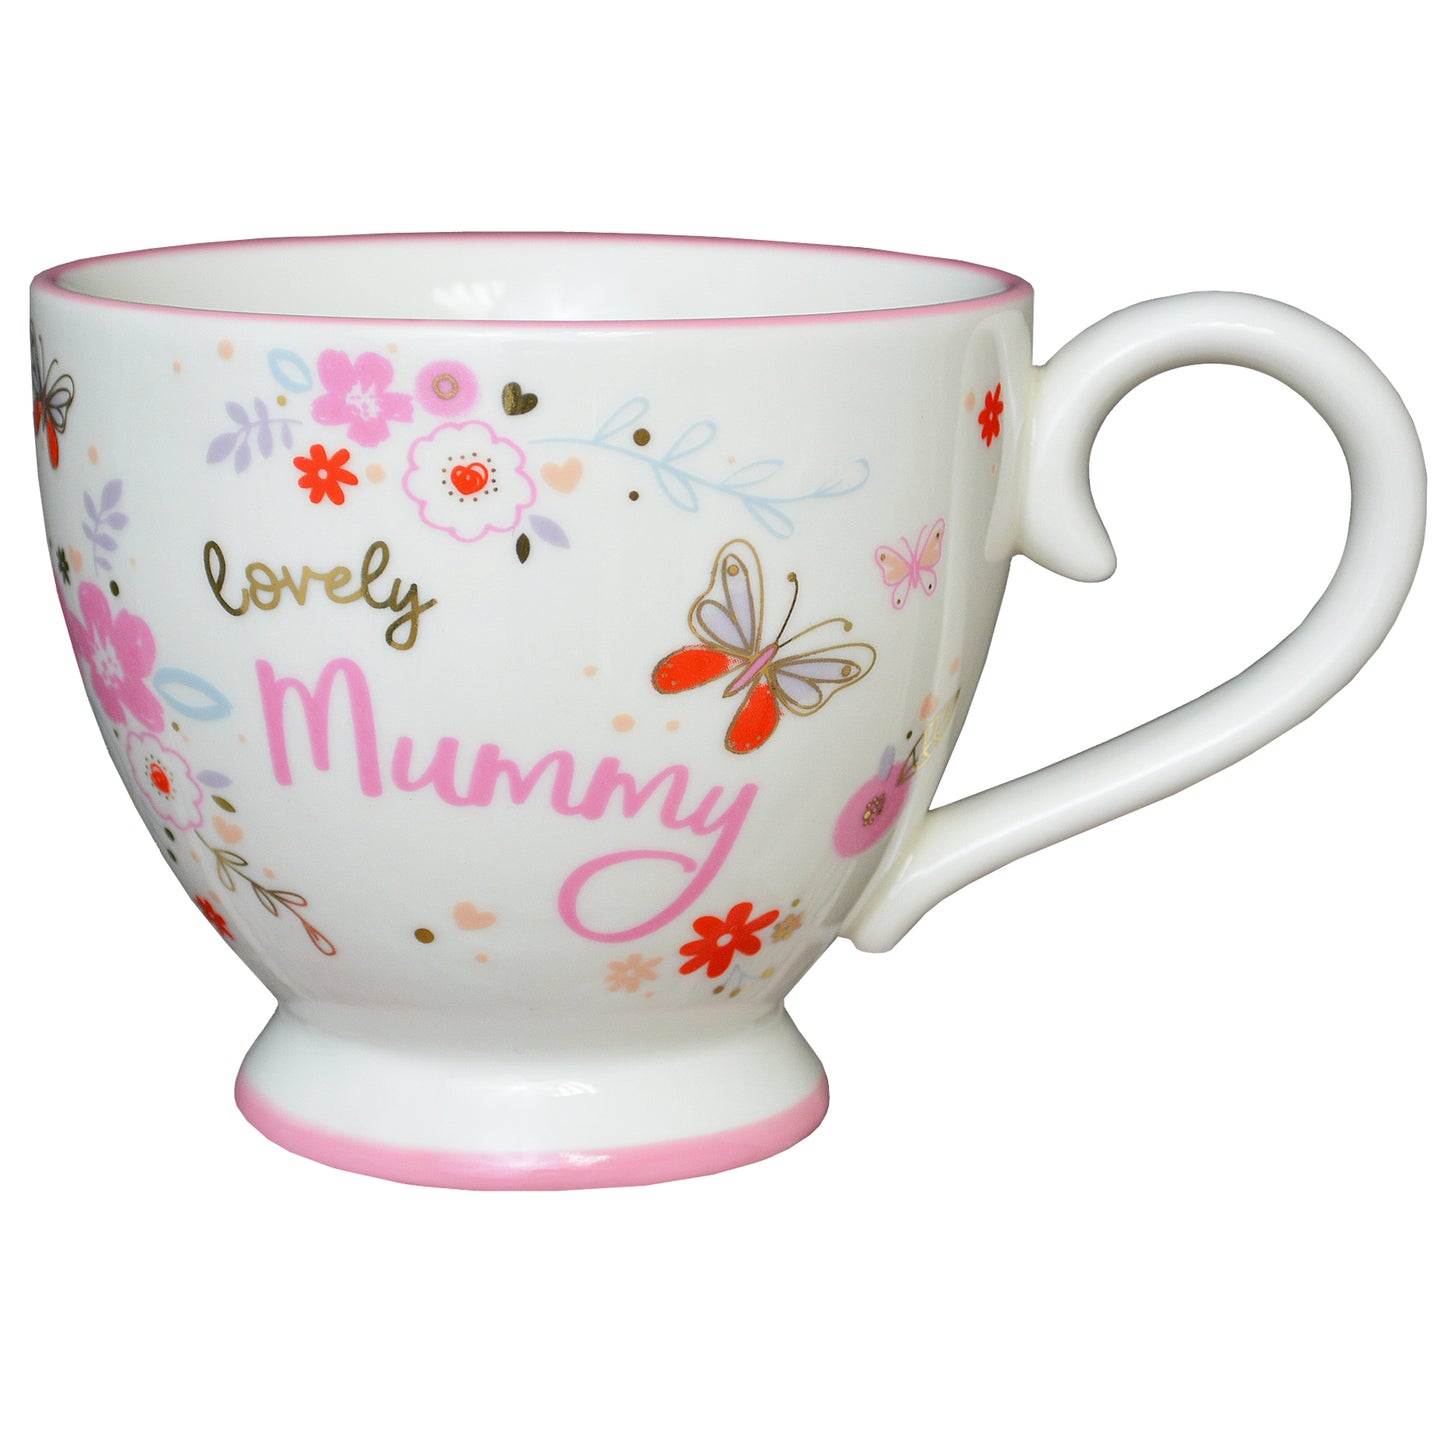 Lovely Mummy Jumbo Teacup Gift